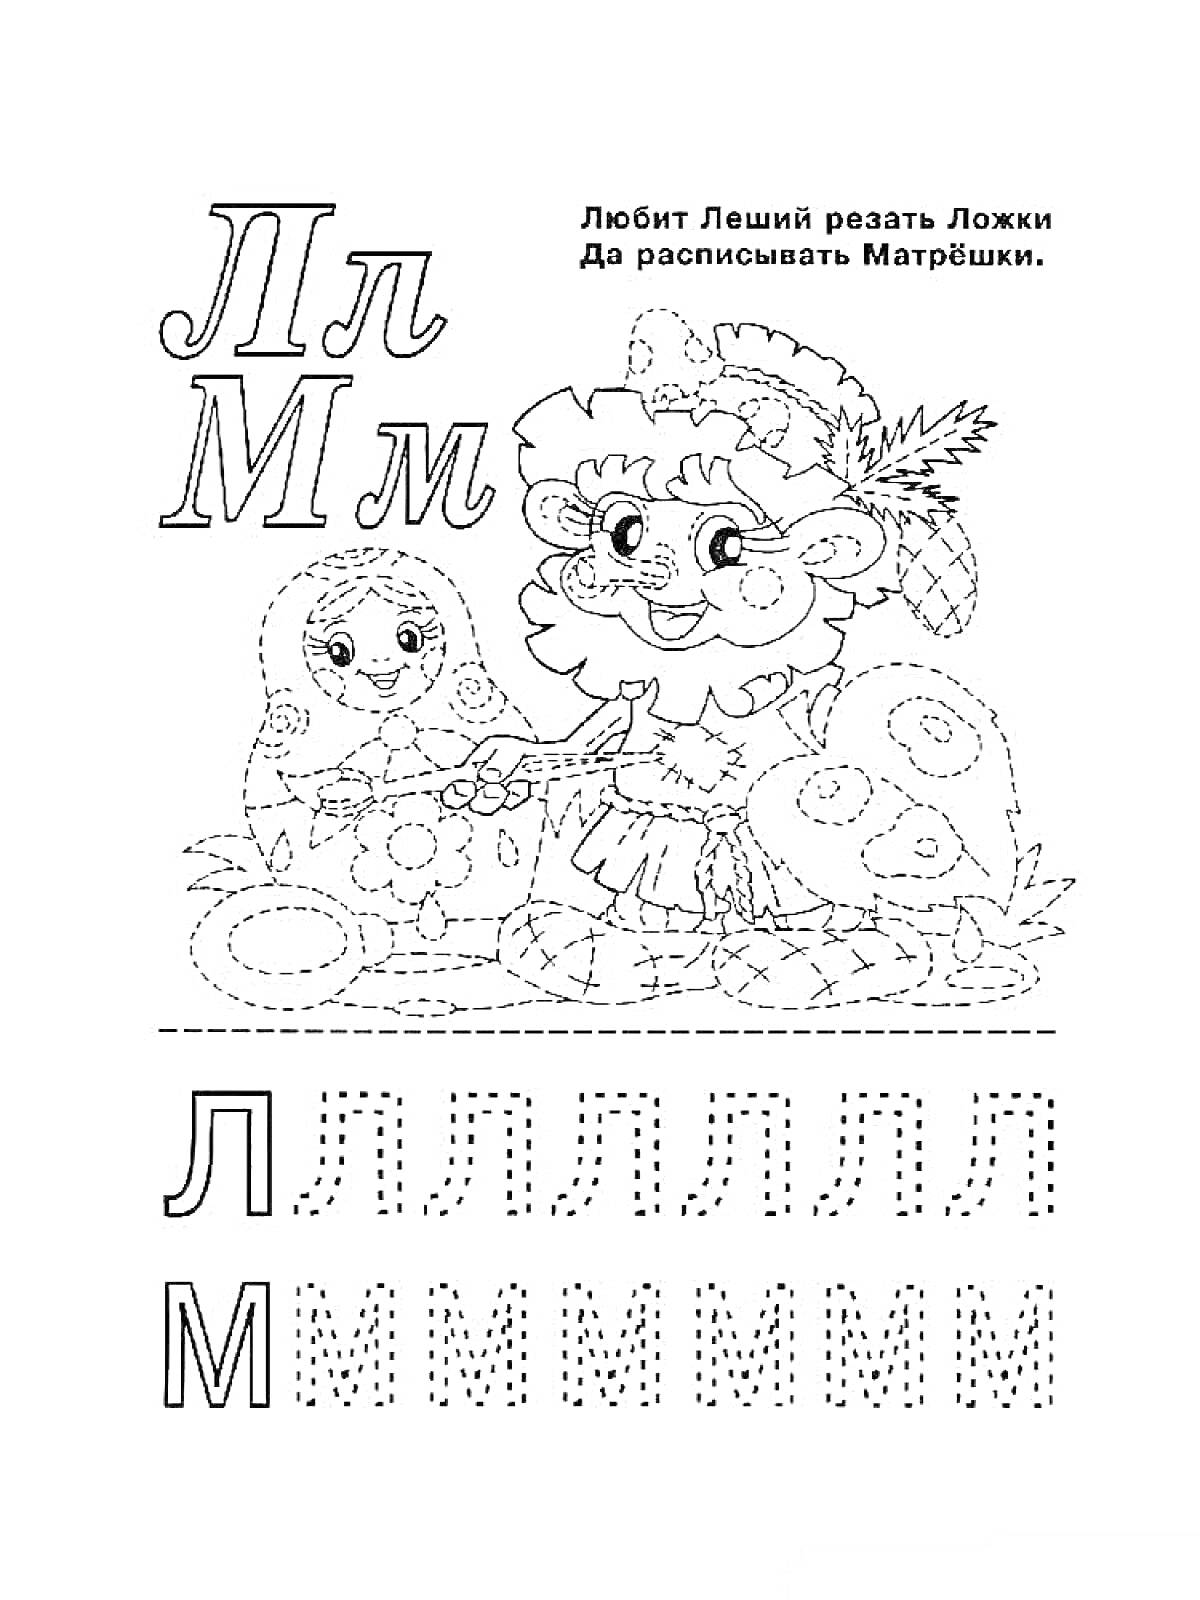 Прописи для букв Л и М с изображением Лешего и матрёшек